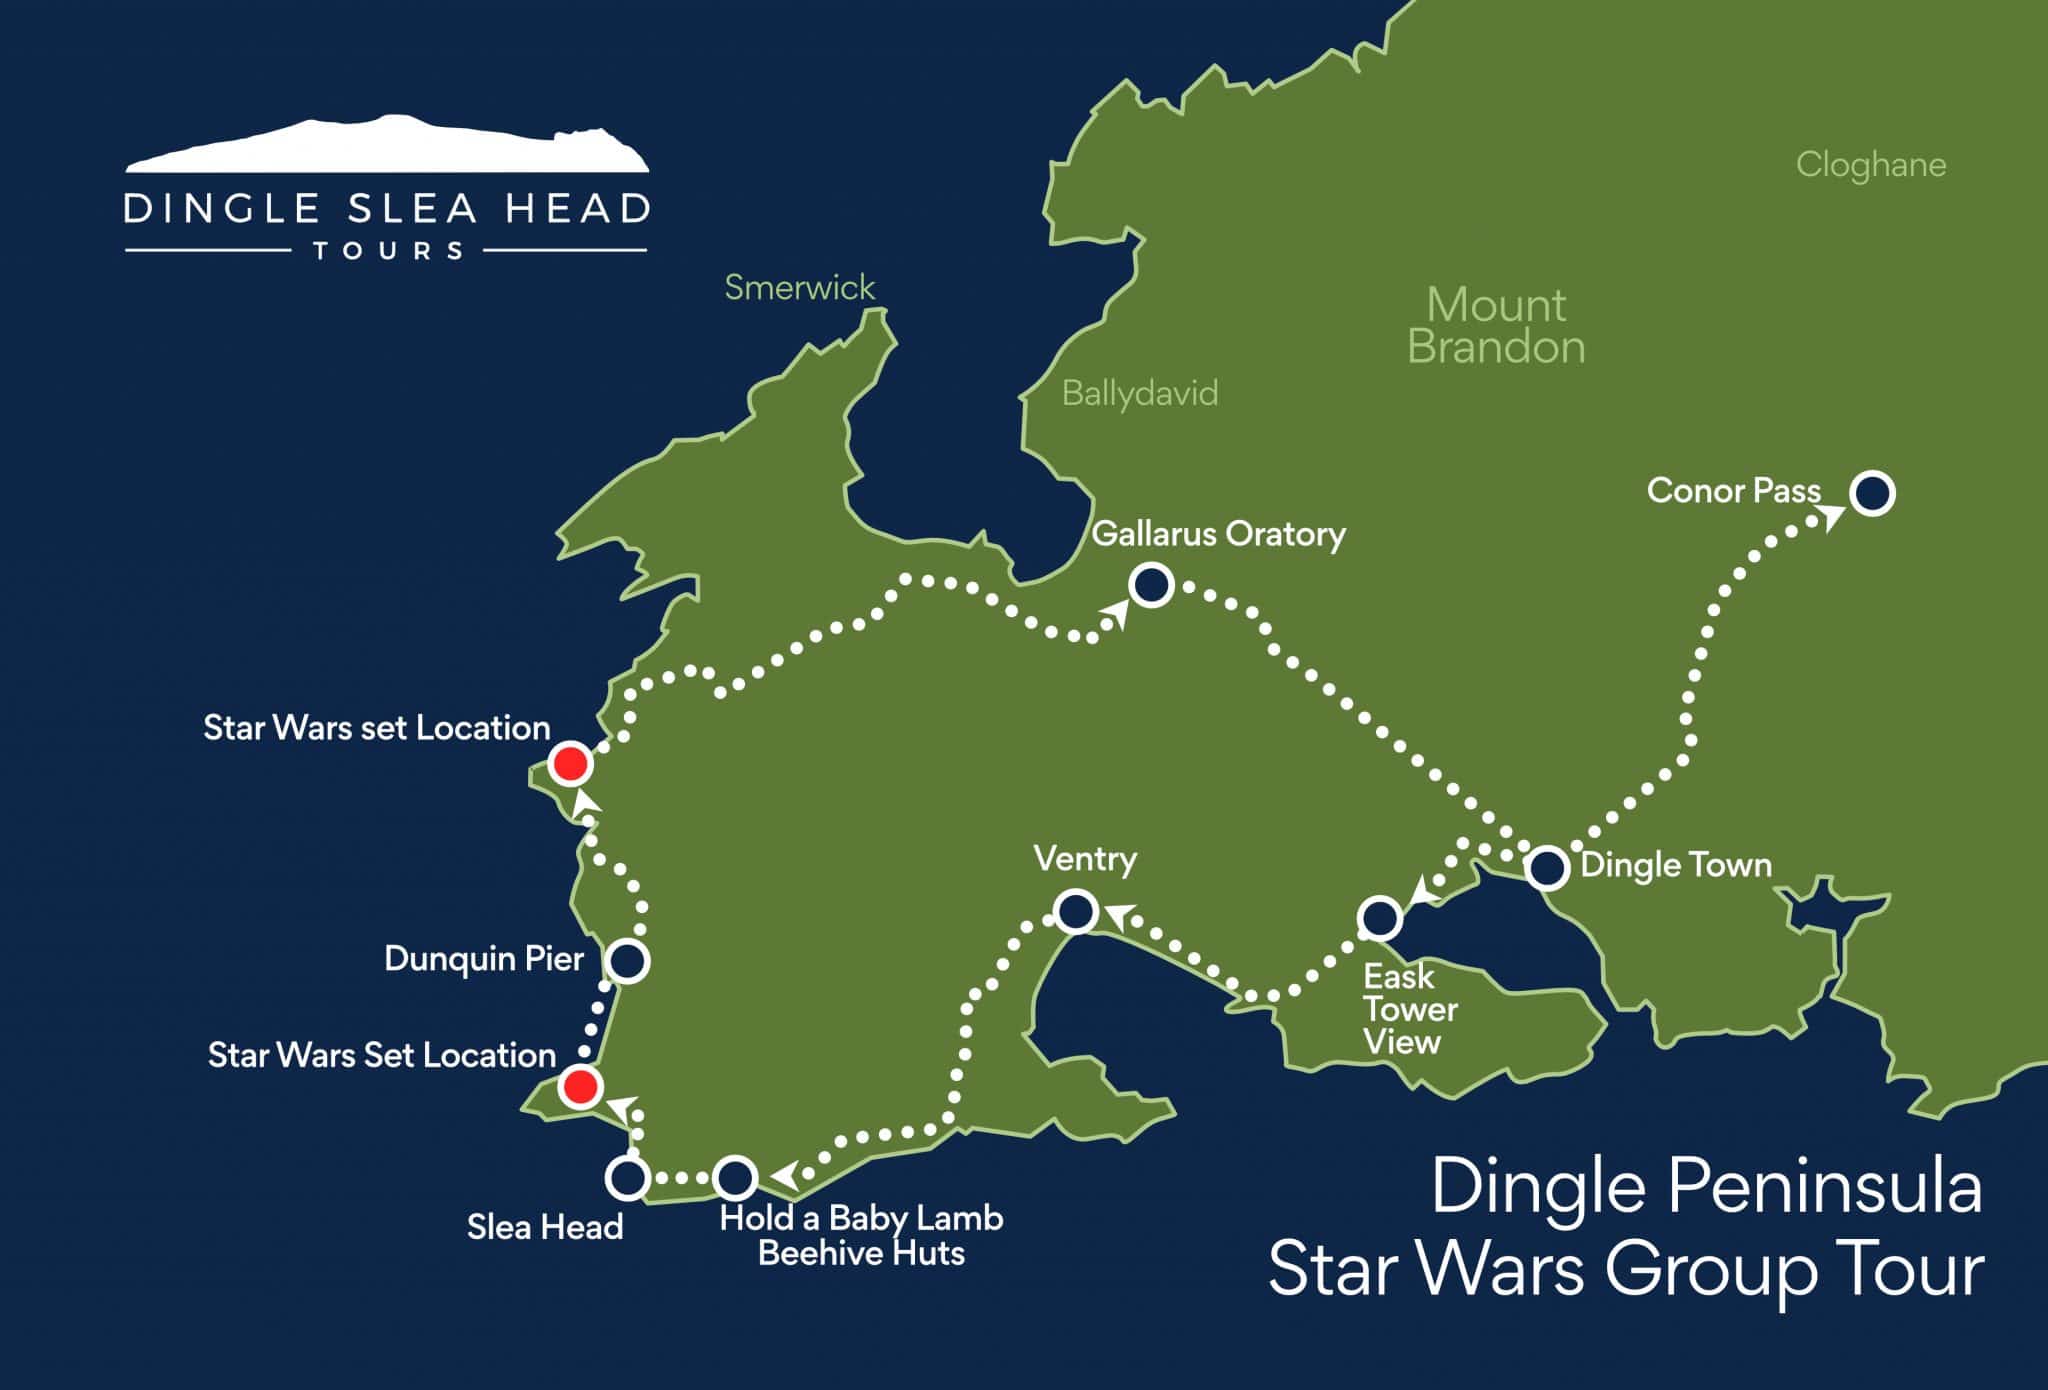 Dingle Peninsula Star Wars Group Tour